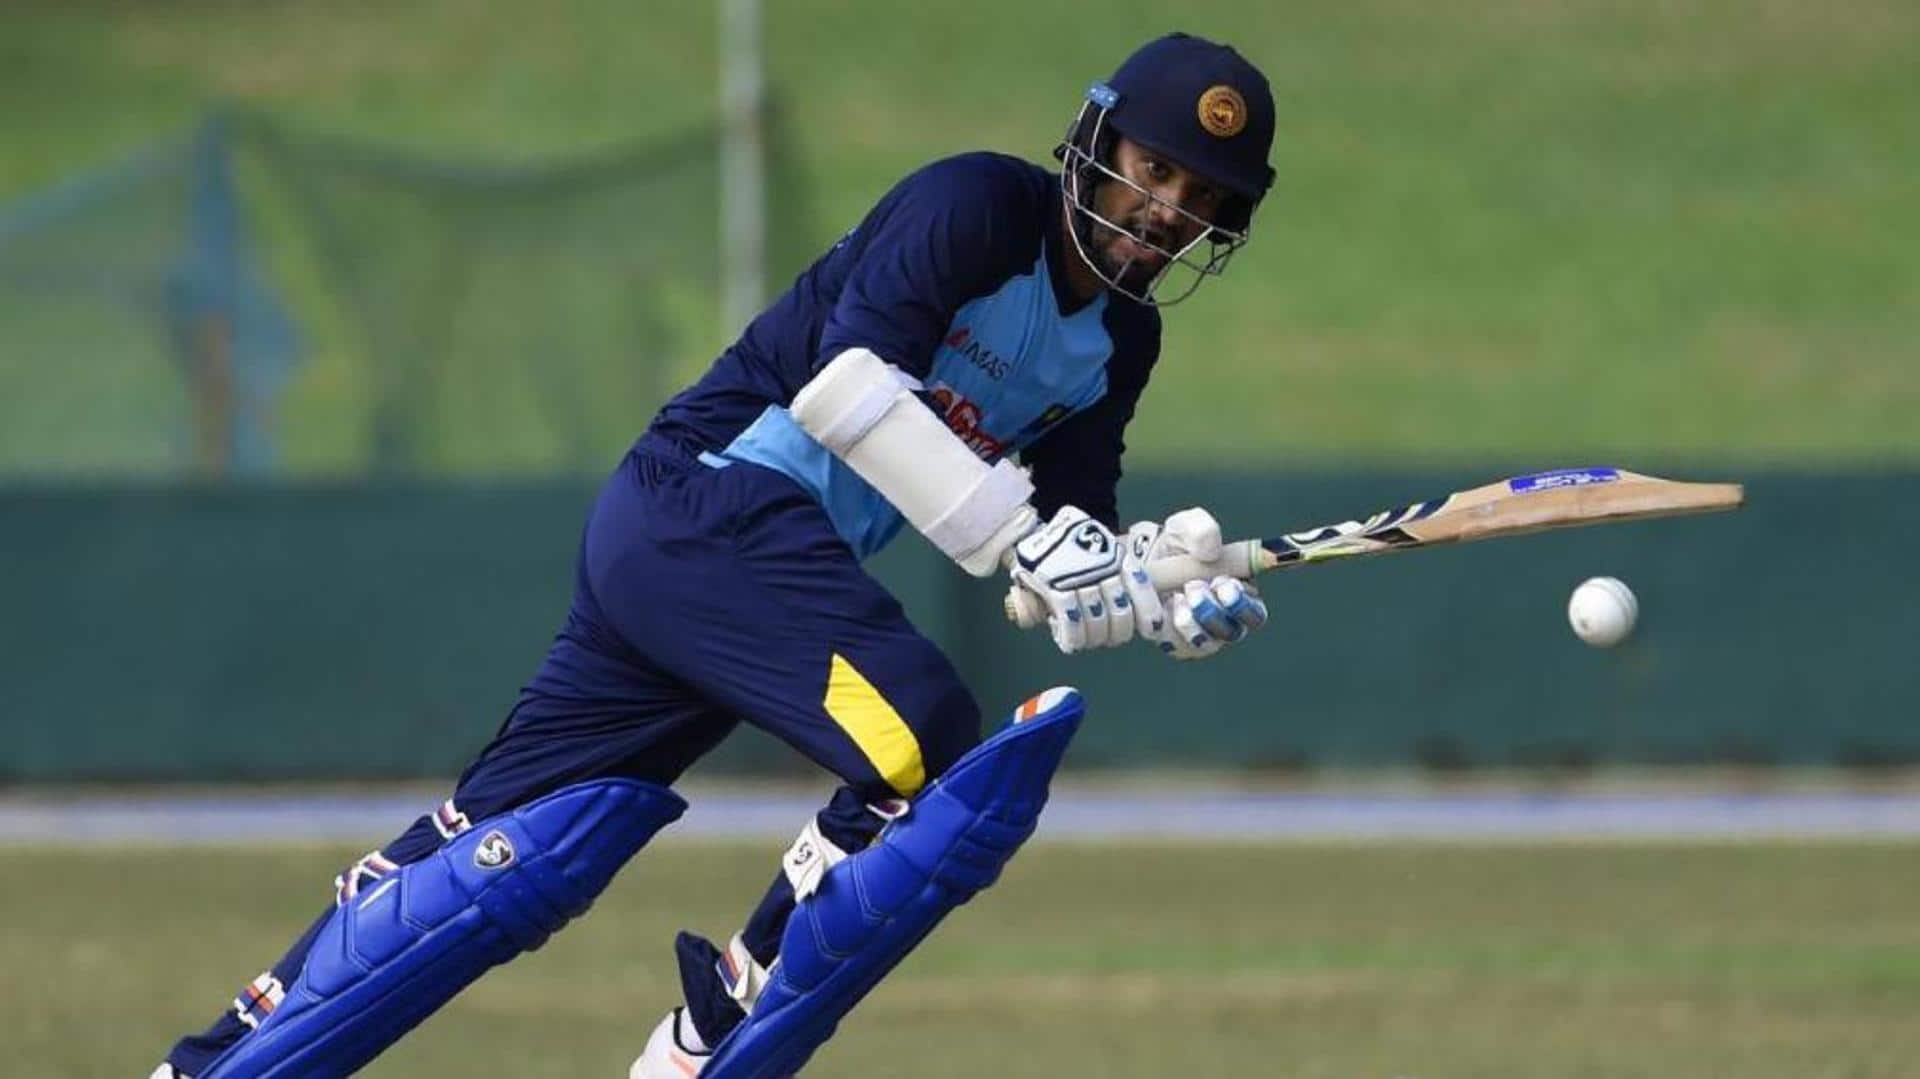 SL vs AFG: Dimuth Karunaratne clocks his seventh ODI fifty